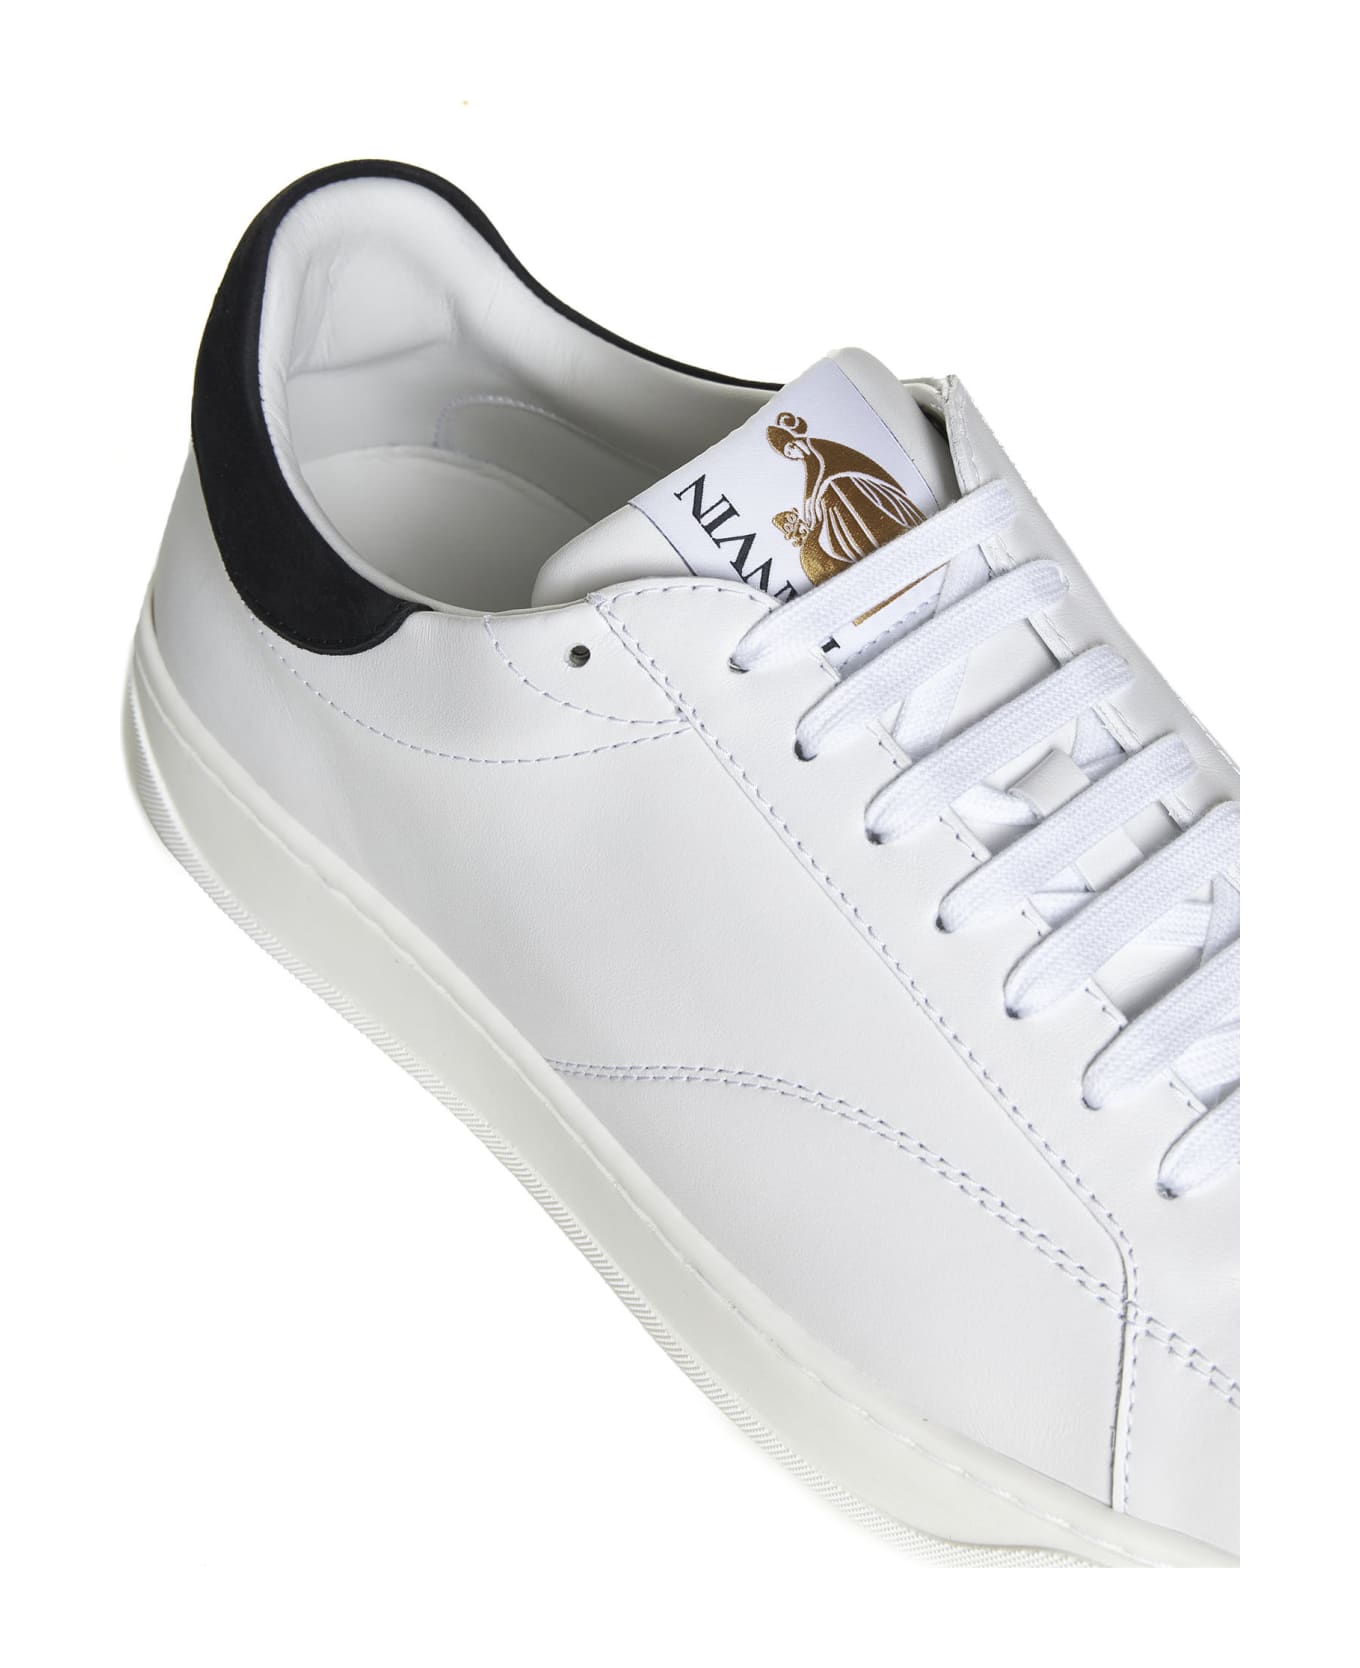 Lanvin Sneakers - White Black スニーカー